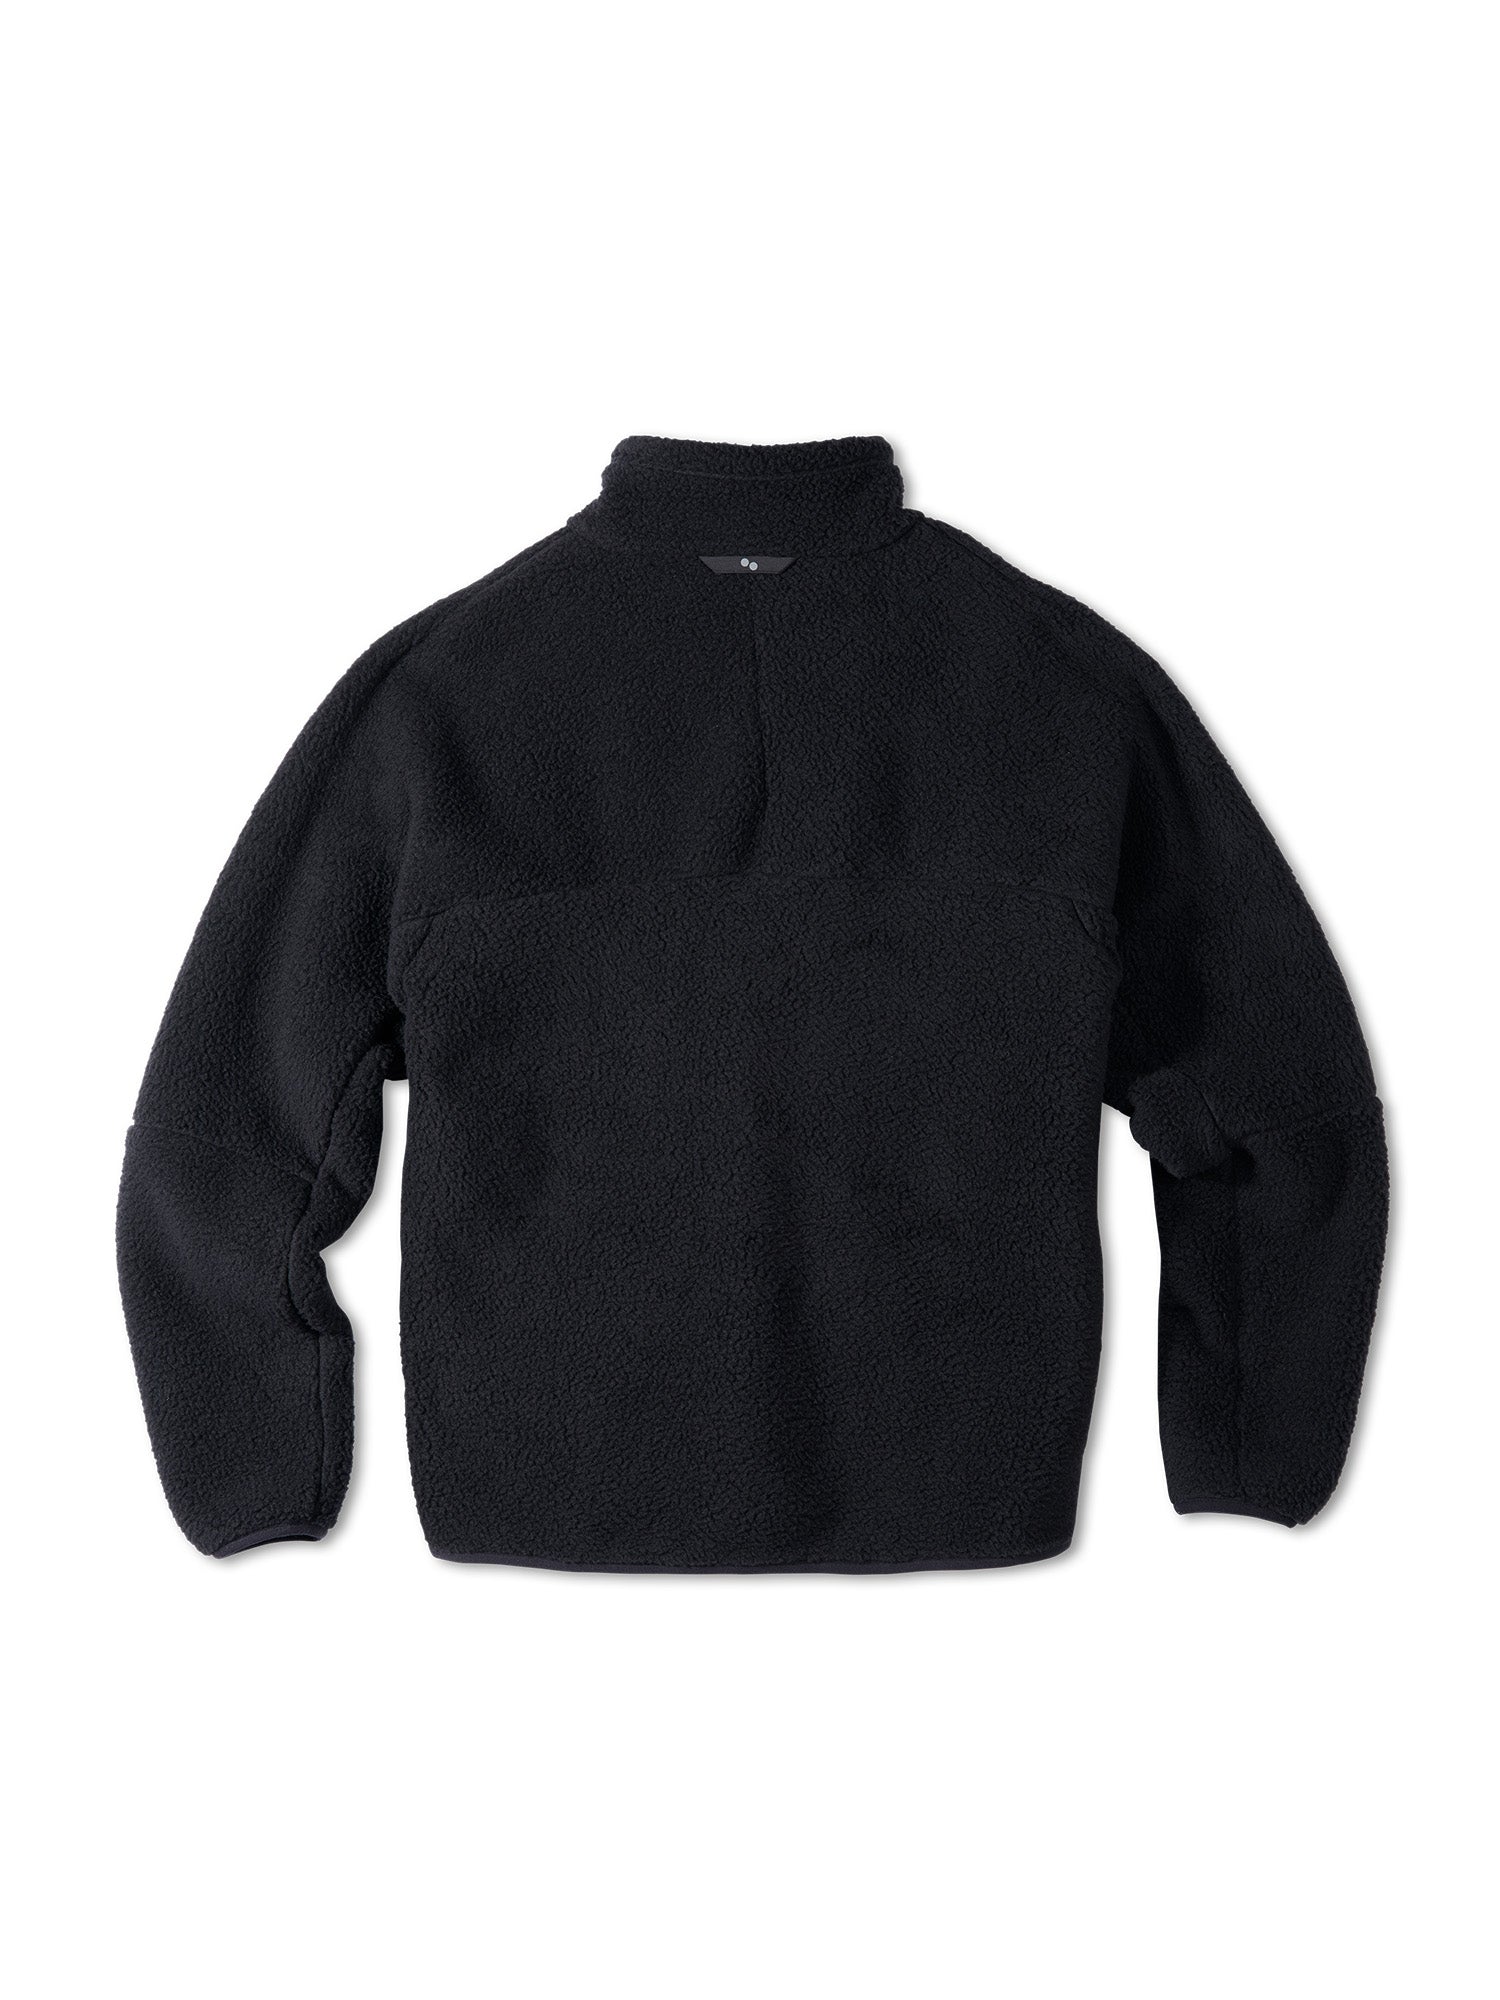 Fleece Jacket - Peat Black (Male)